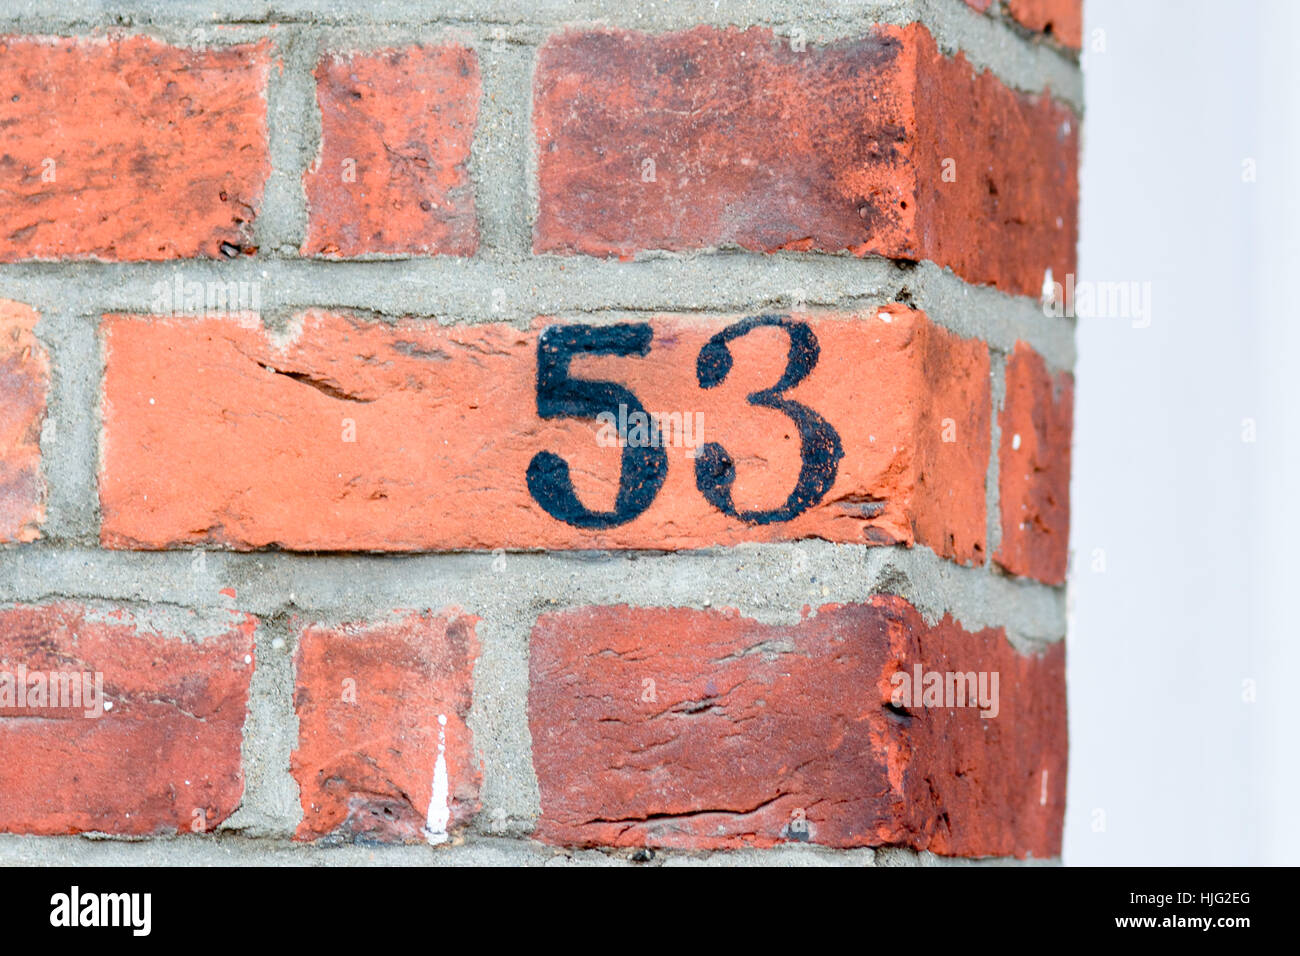 numero-de-maison-53-inscription-peinte-en-noir-sur-le-mur-de-brique-rouge-hjg2eg.jpg